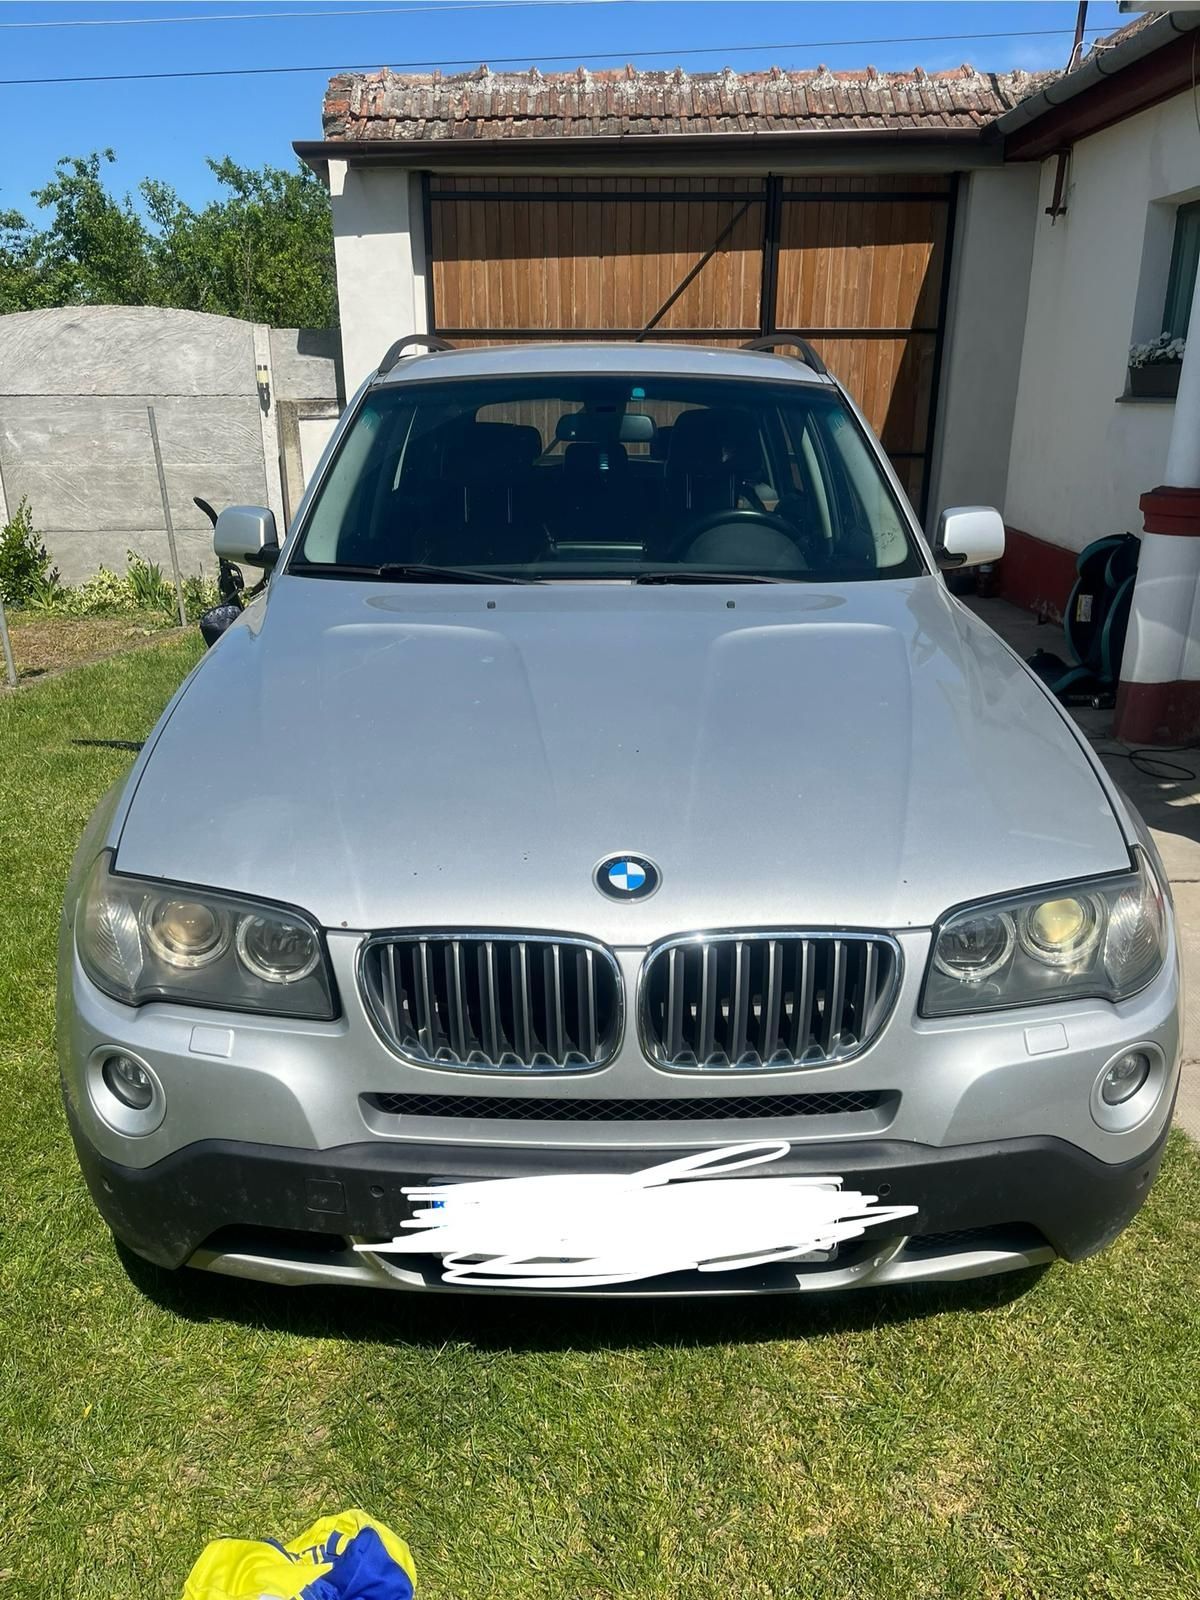 Vând BMW X3 an 2009